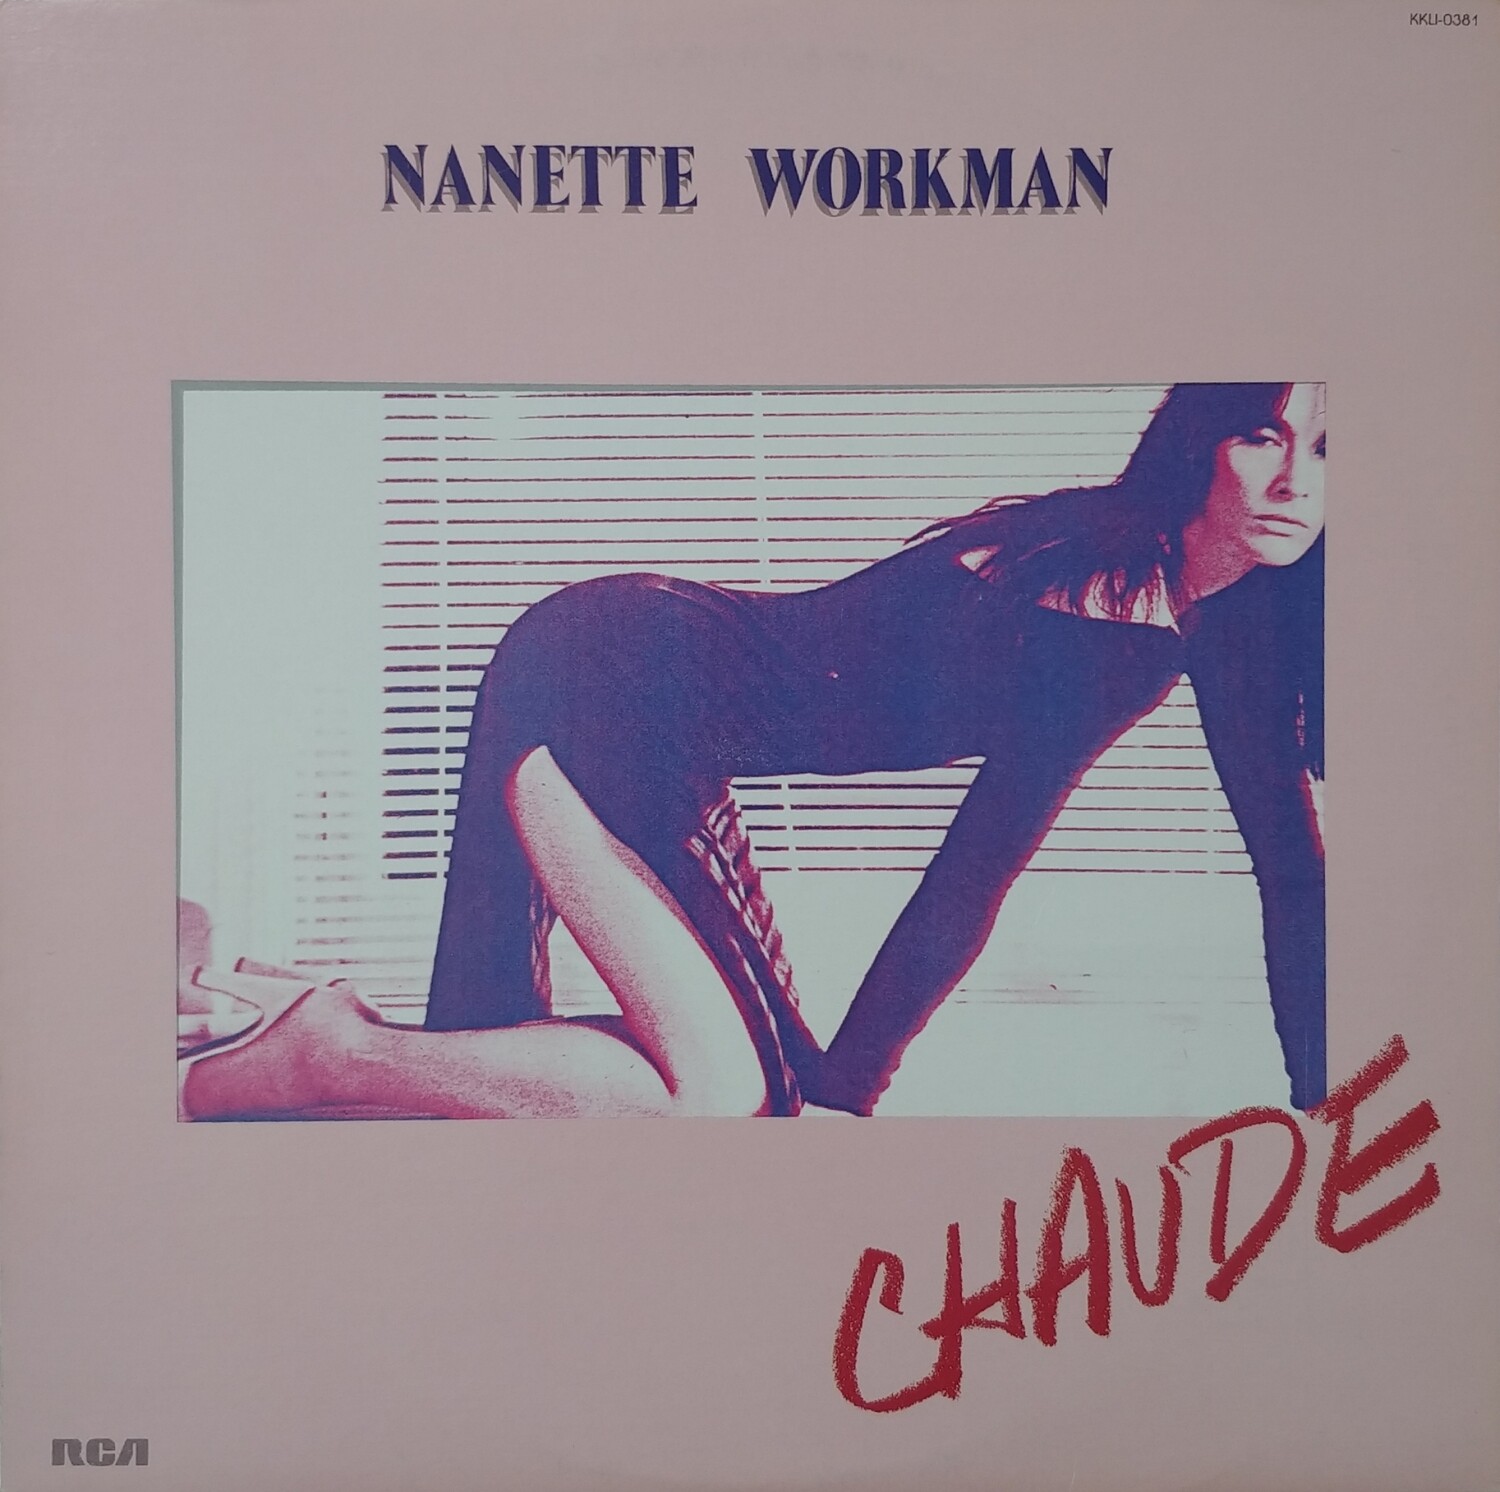 Nanette Workman - Chaude